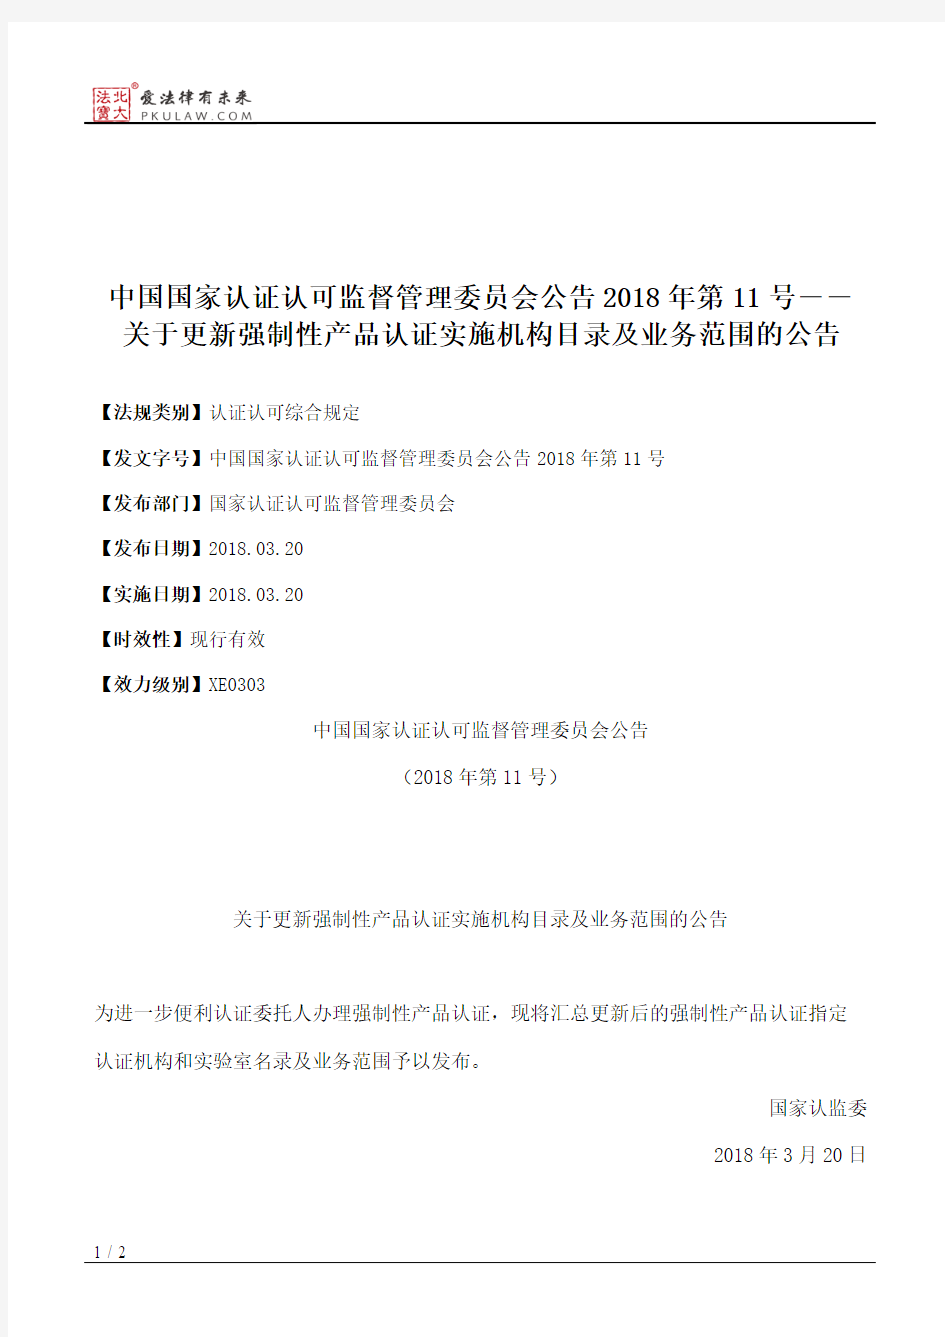 中国国家认证认可监督管理委员会公告2018年第11号――关于更新强制